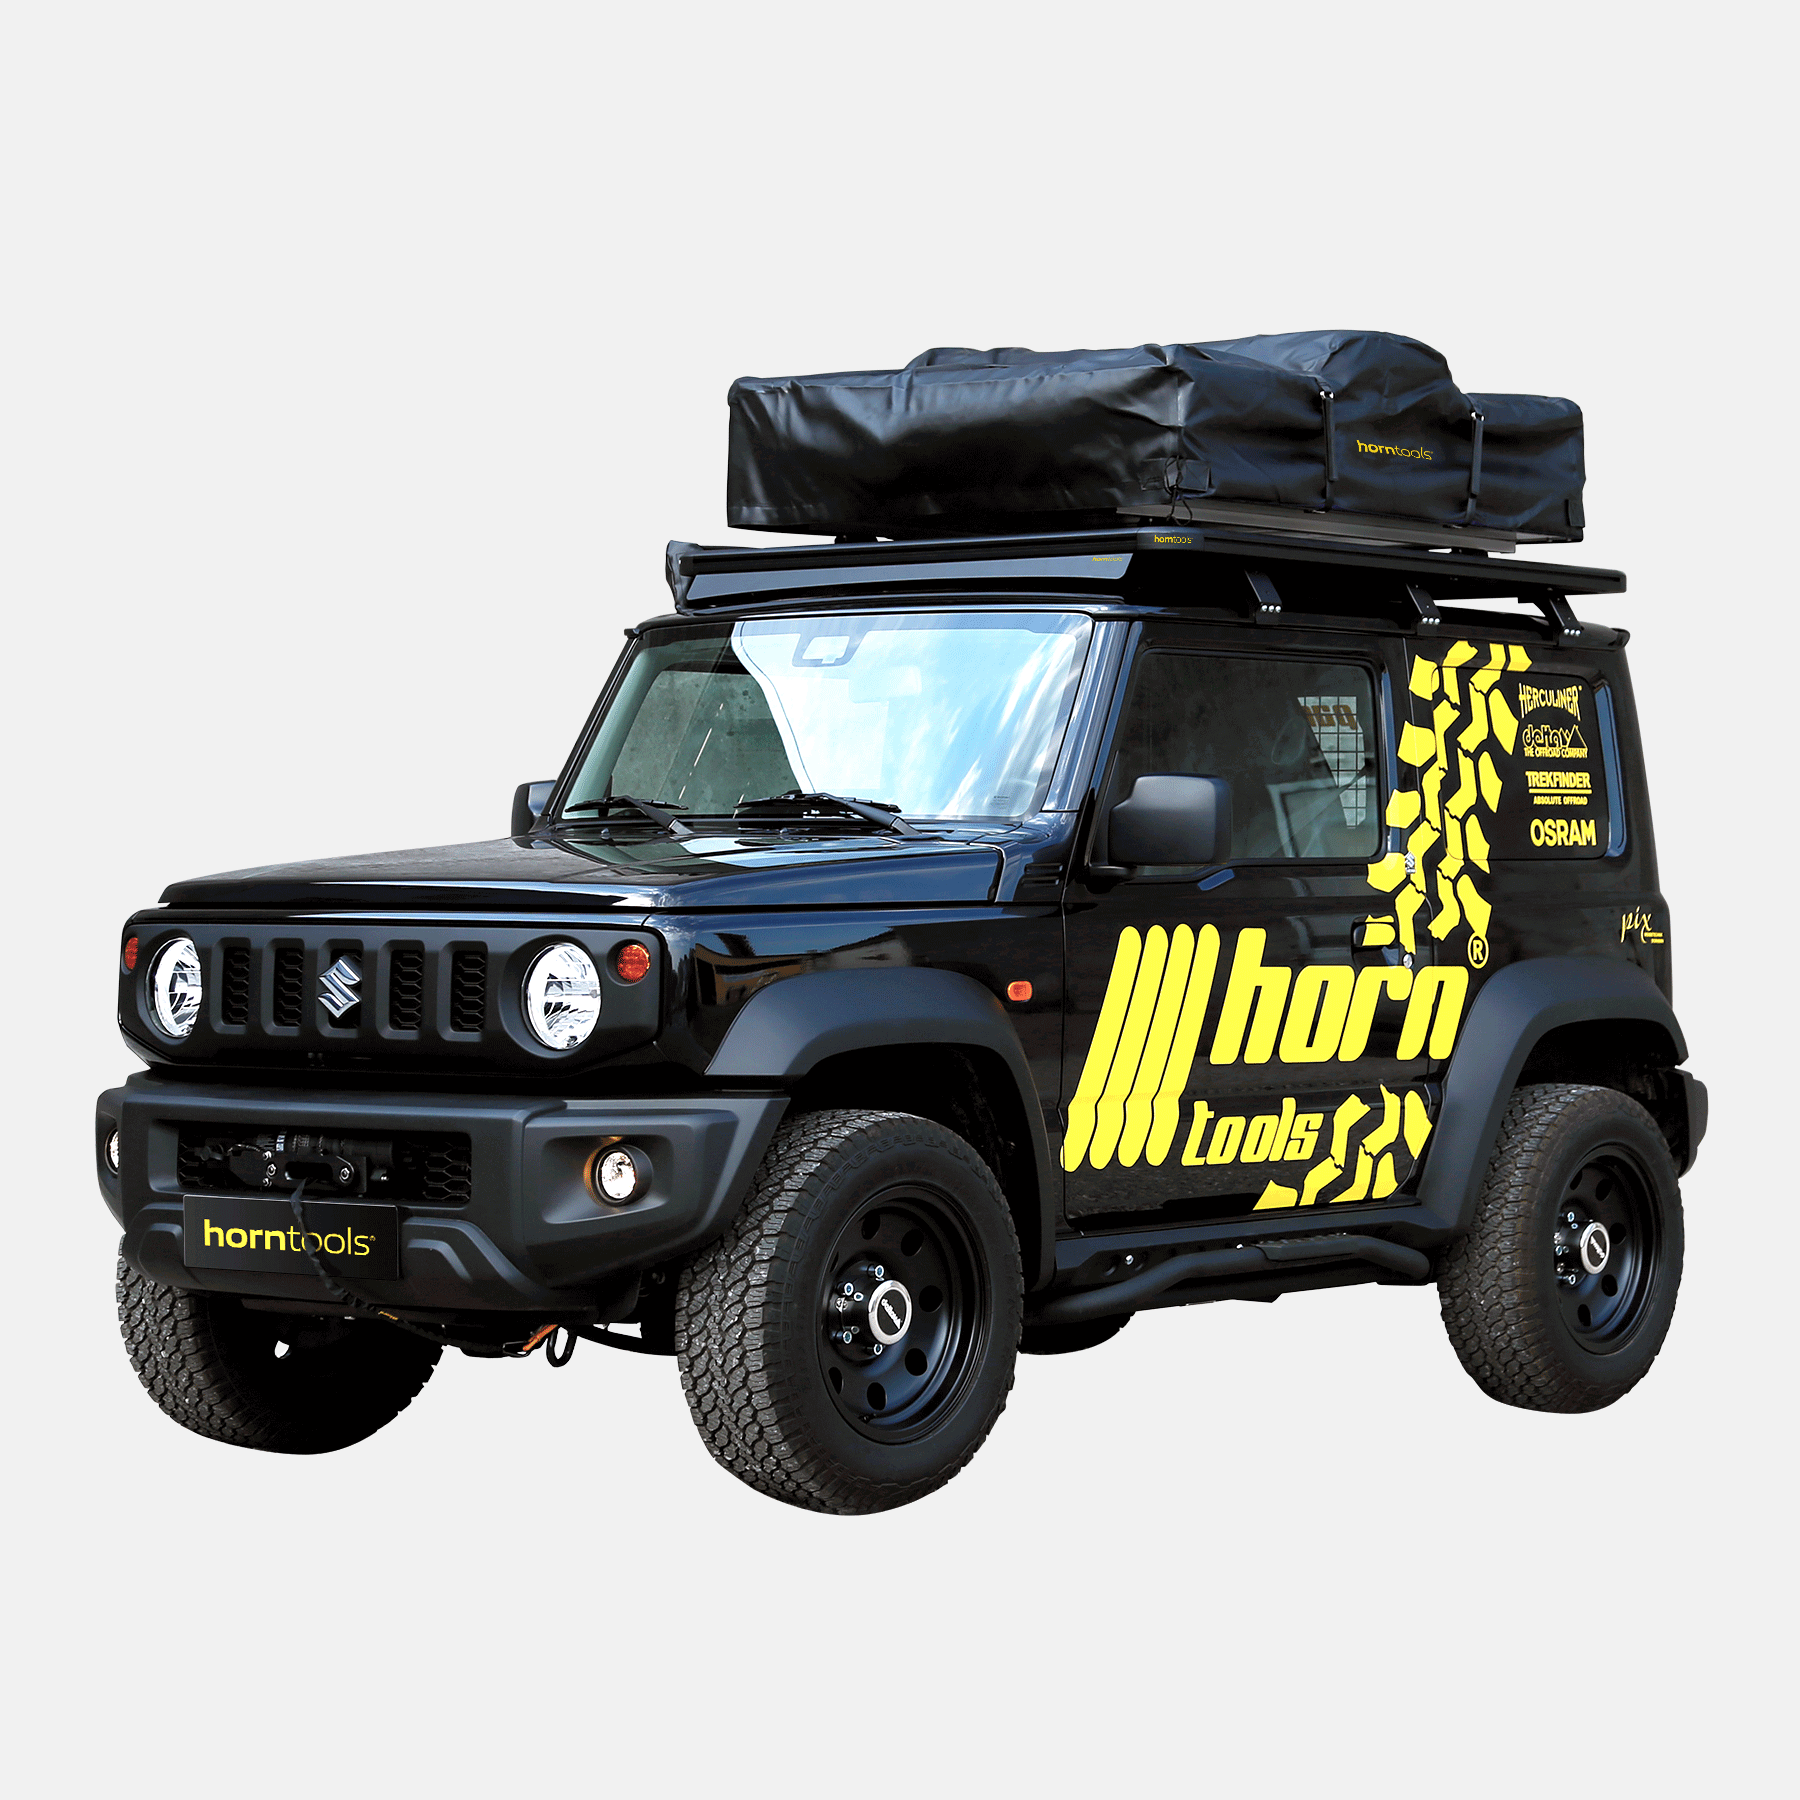 Dachträger ExRoof für Suzuki Jimny GJ